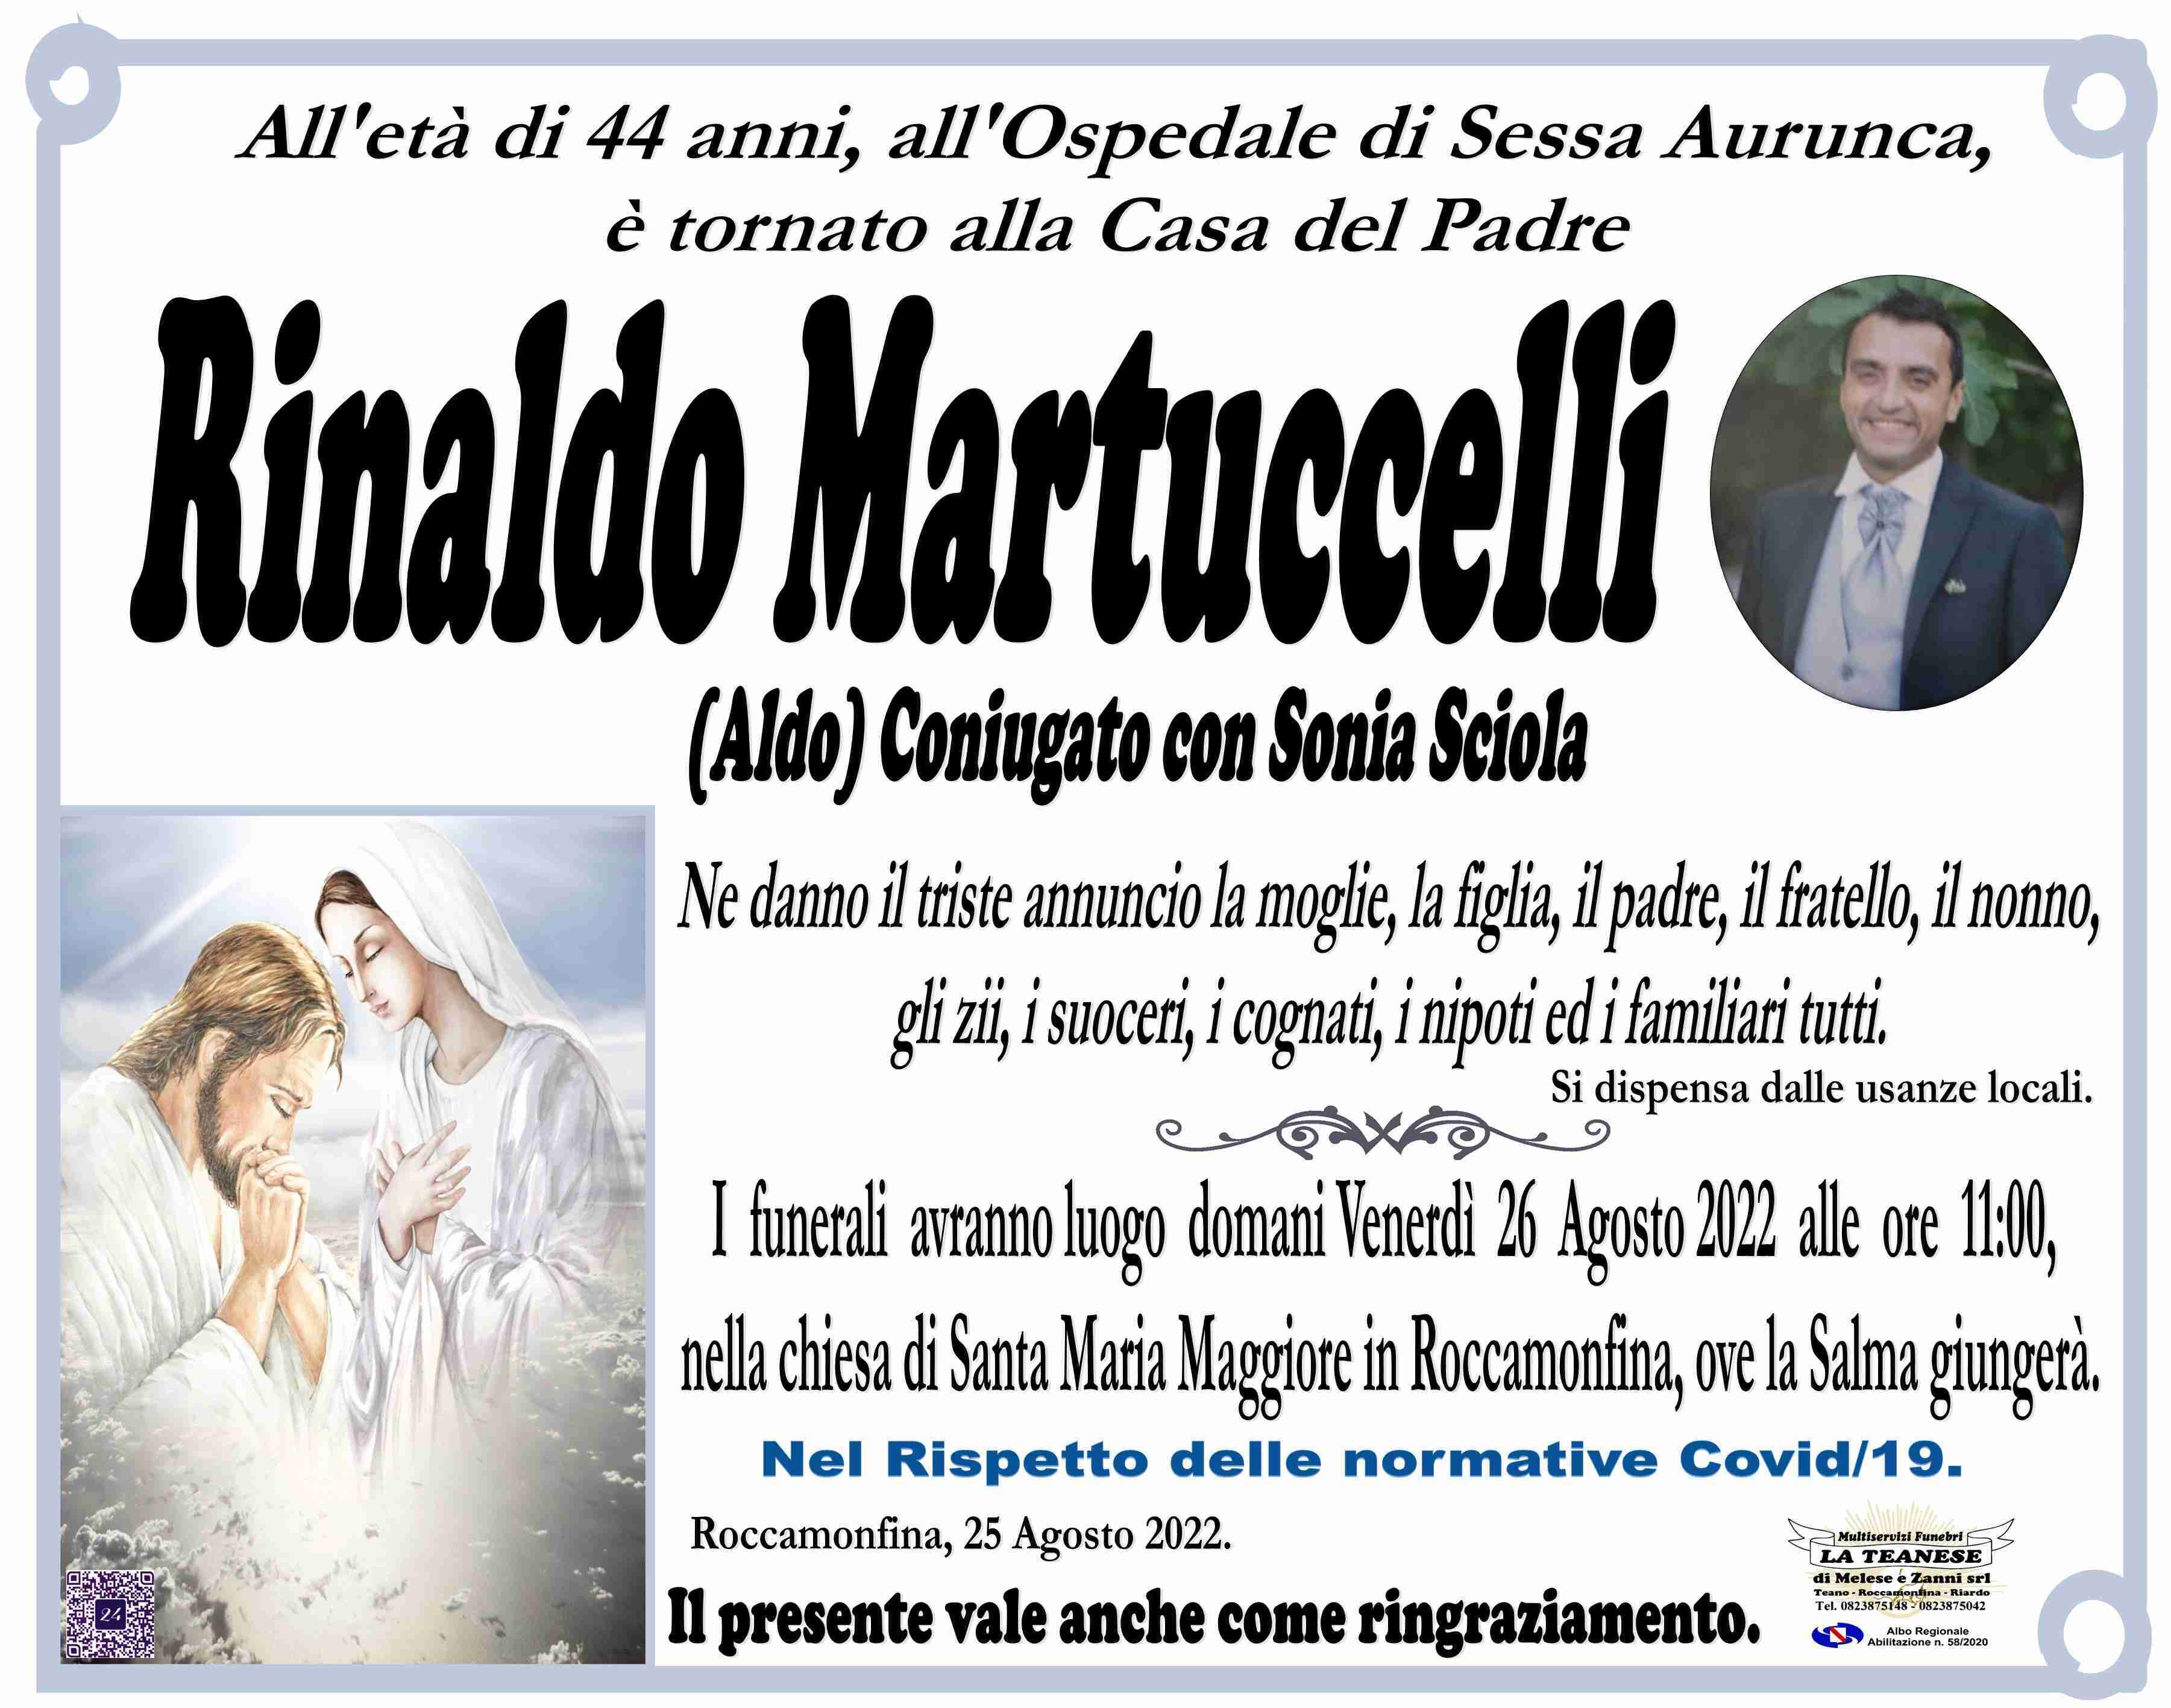 Rinaldo Martuccelli